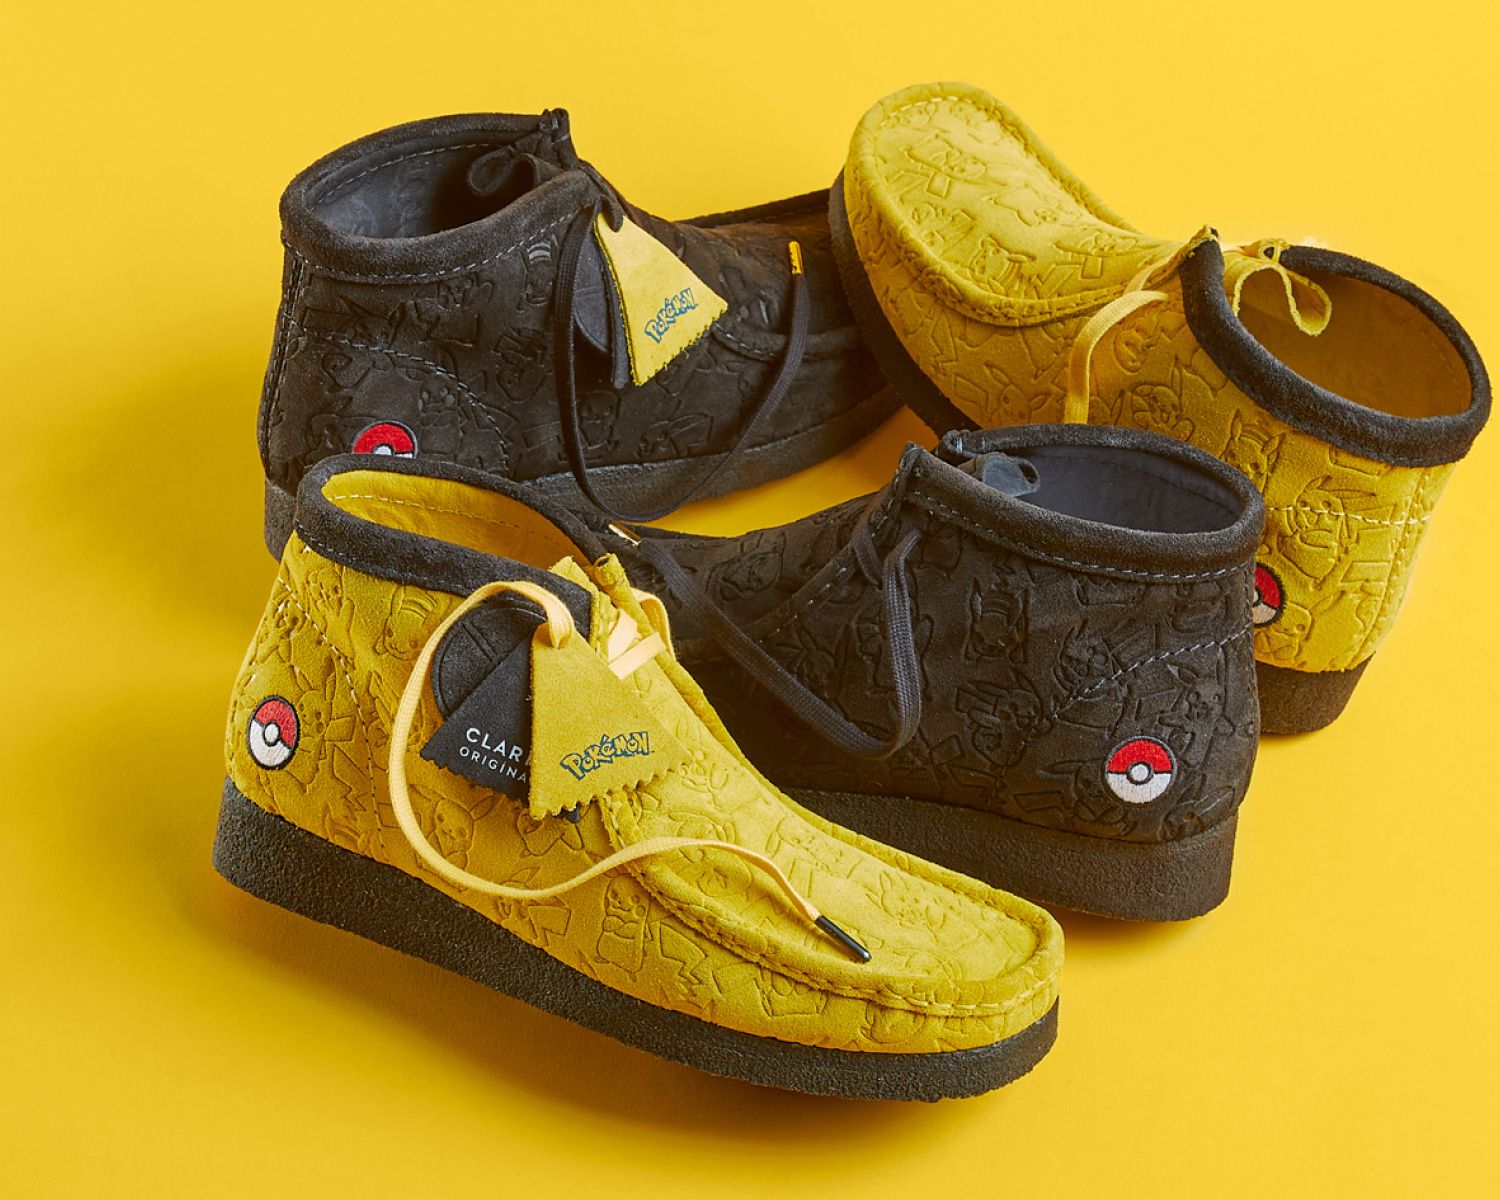 Winactie: Maak kans op een paar schoenen uit de Clarks Pokémon-collectie!